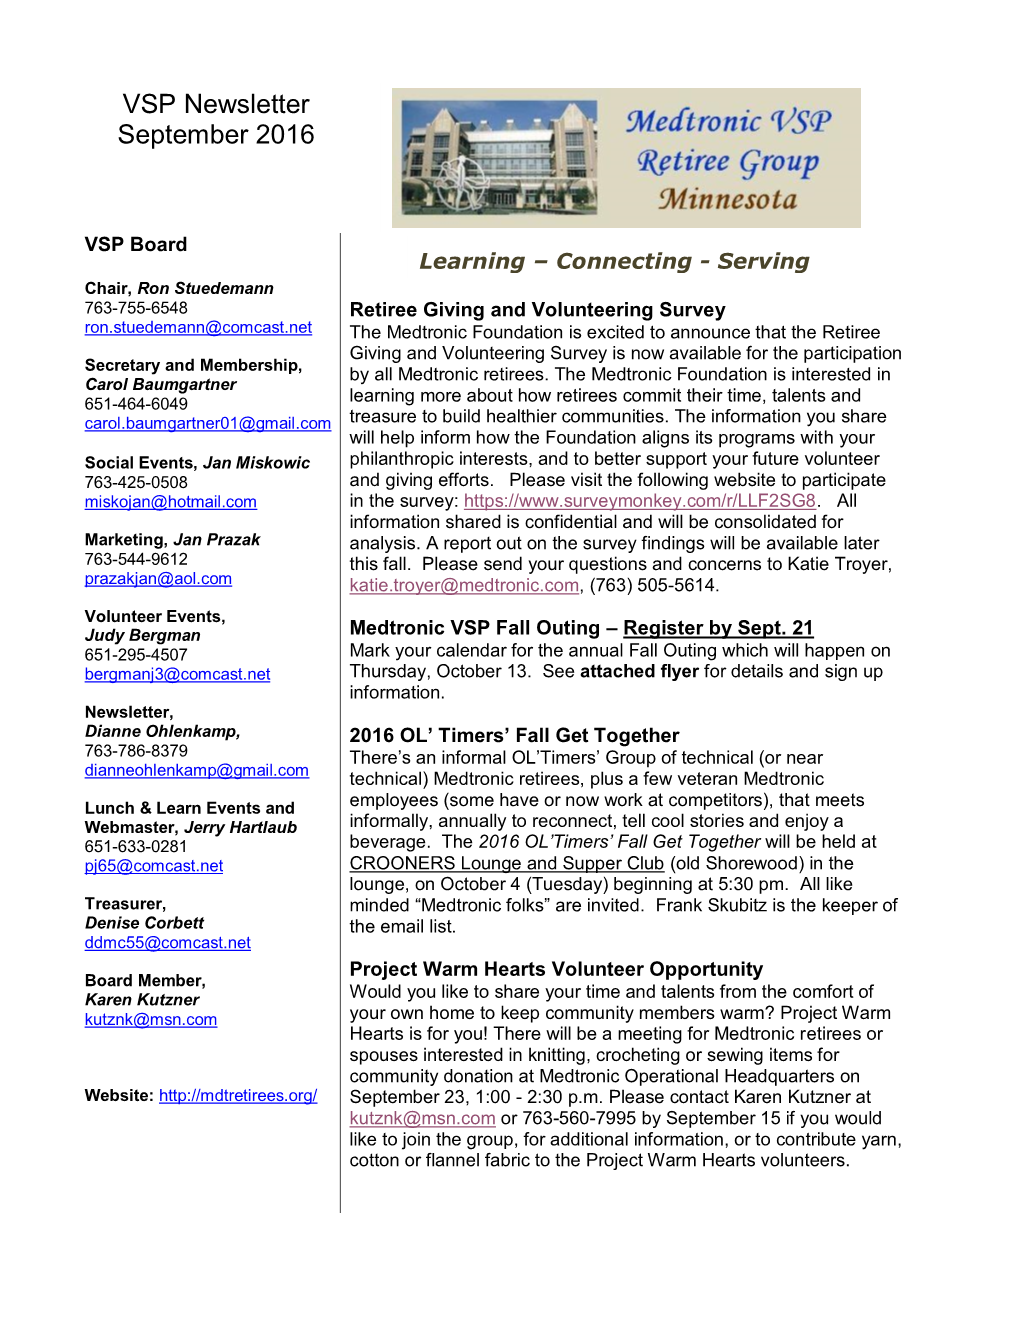 VSP Newsletter September 2016